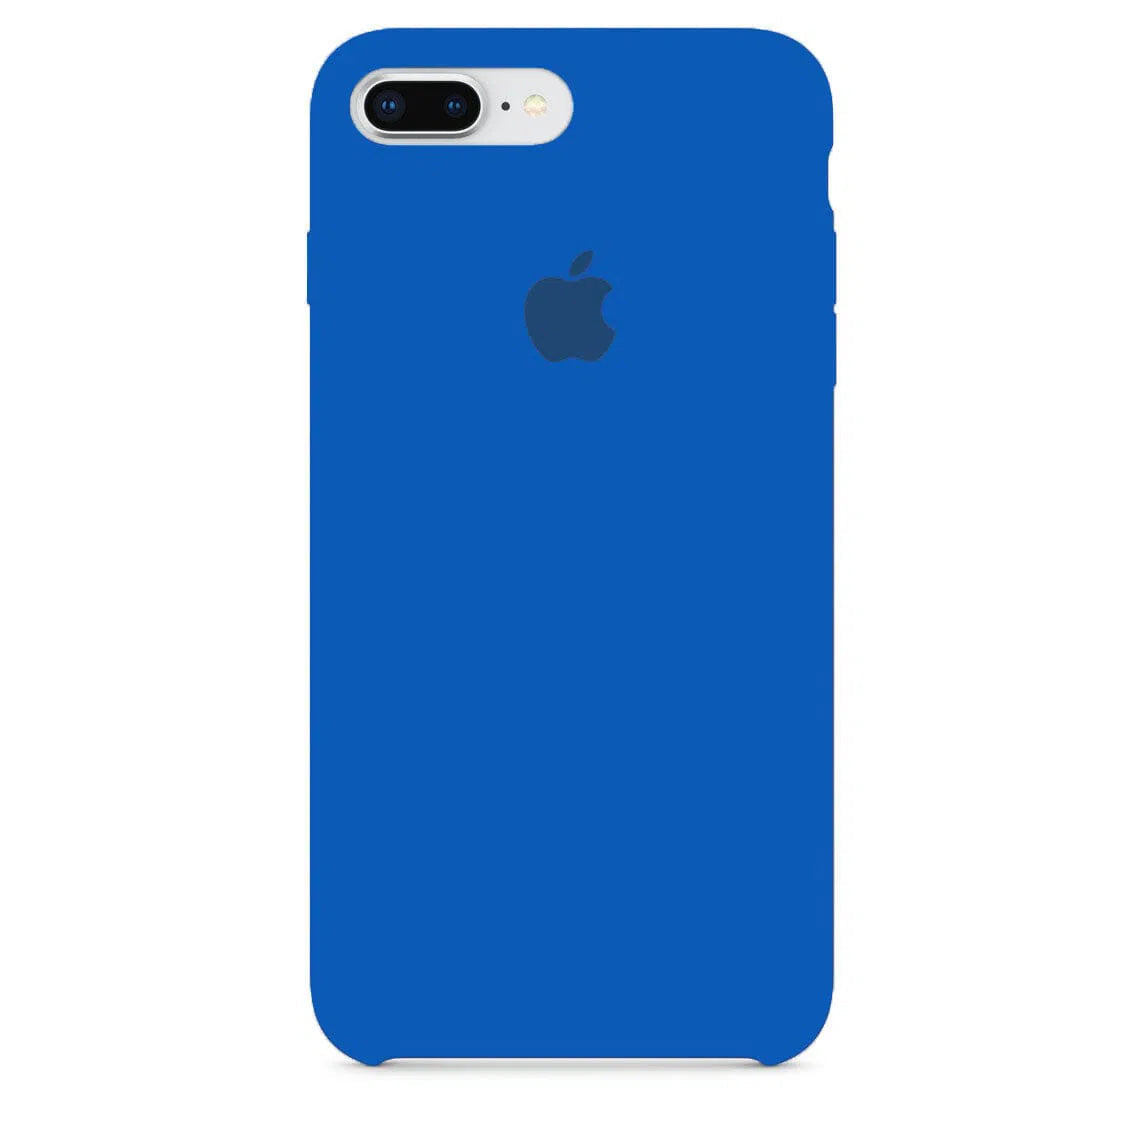 Husa iPhone Silicone Case Blue Cobalt (Albastru) Anca's Store 7Plus/8Plus 